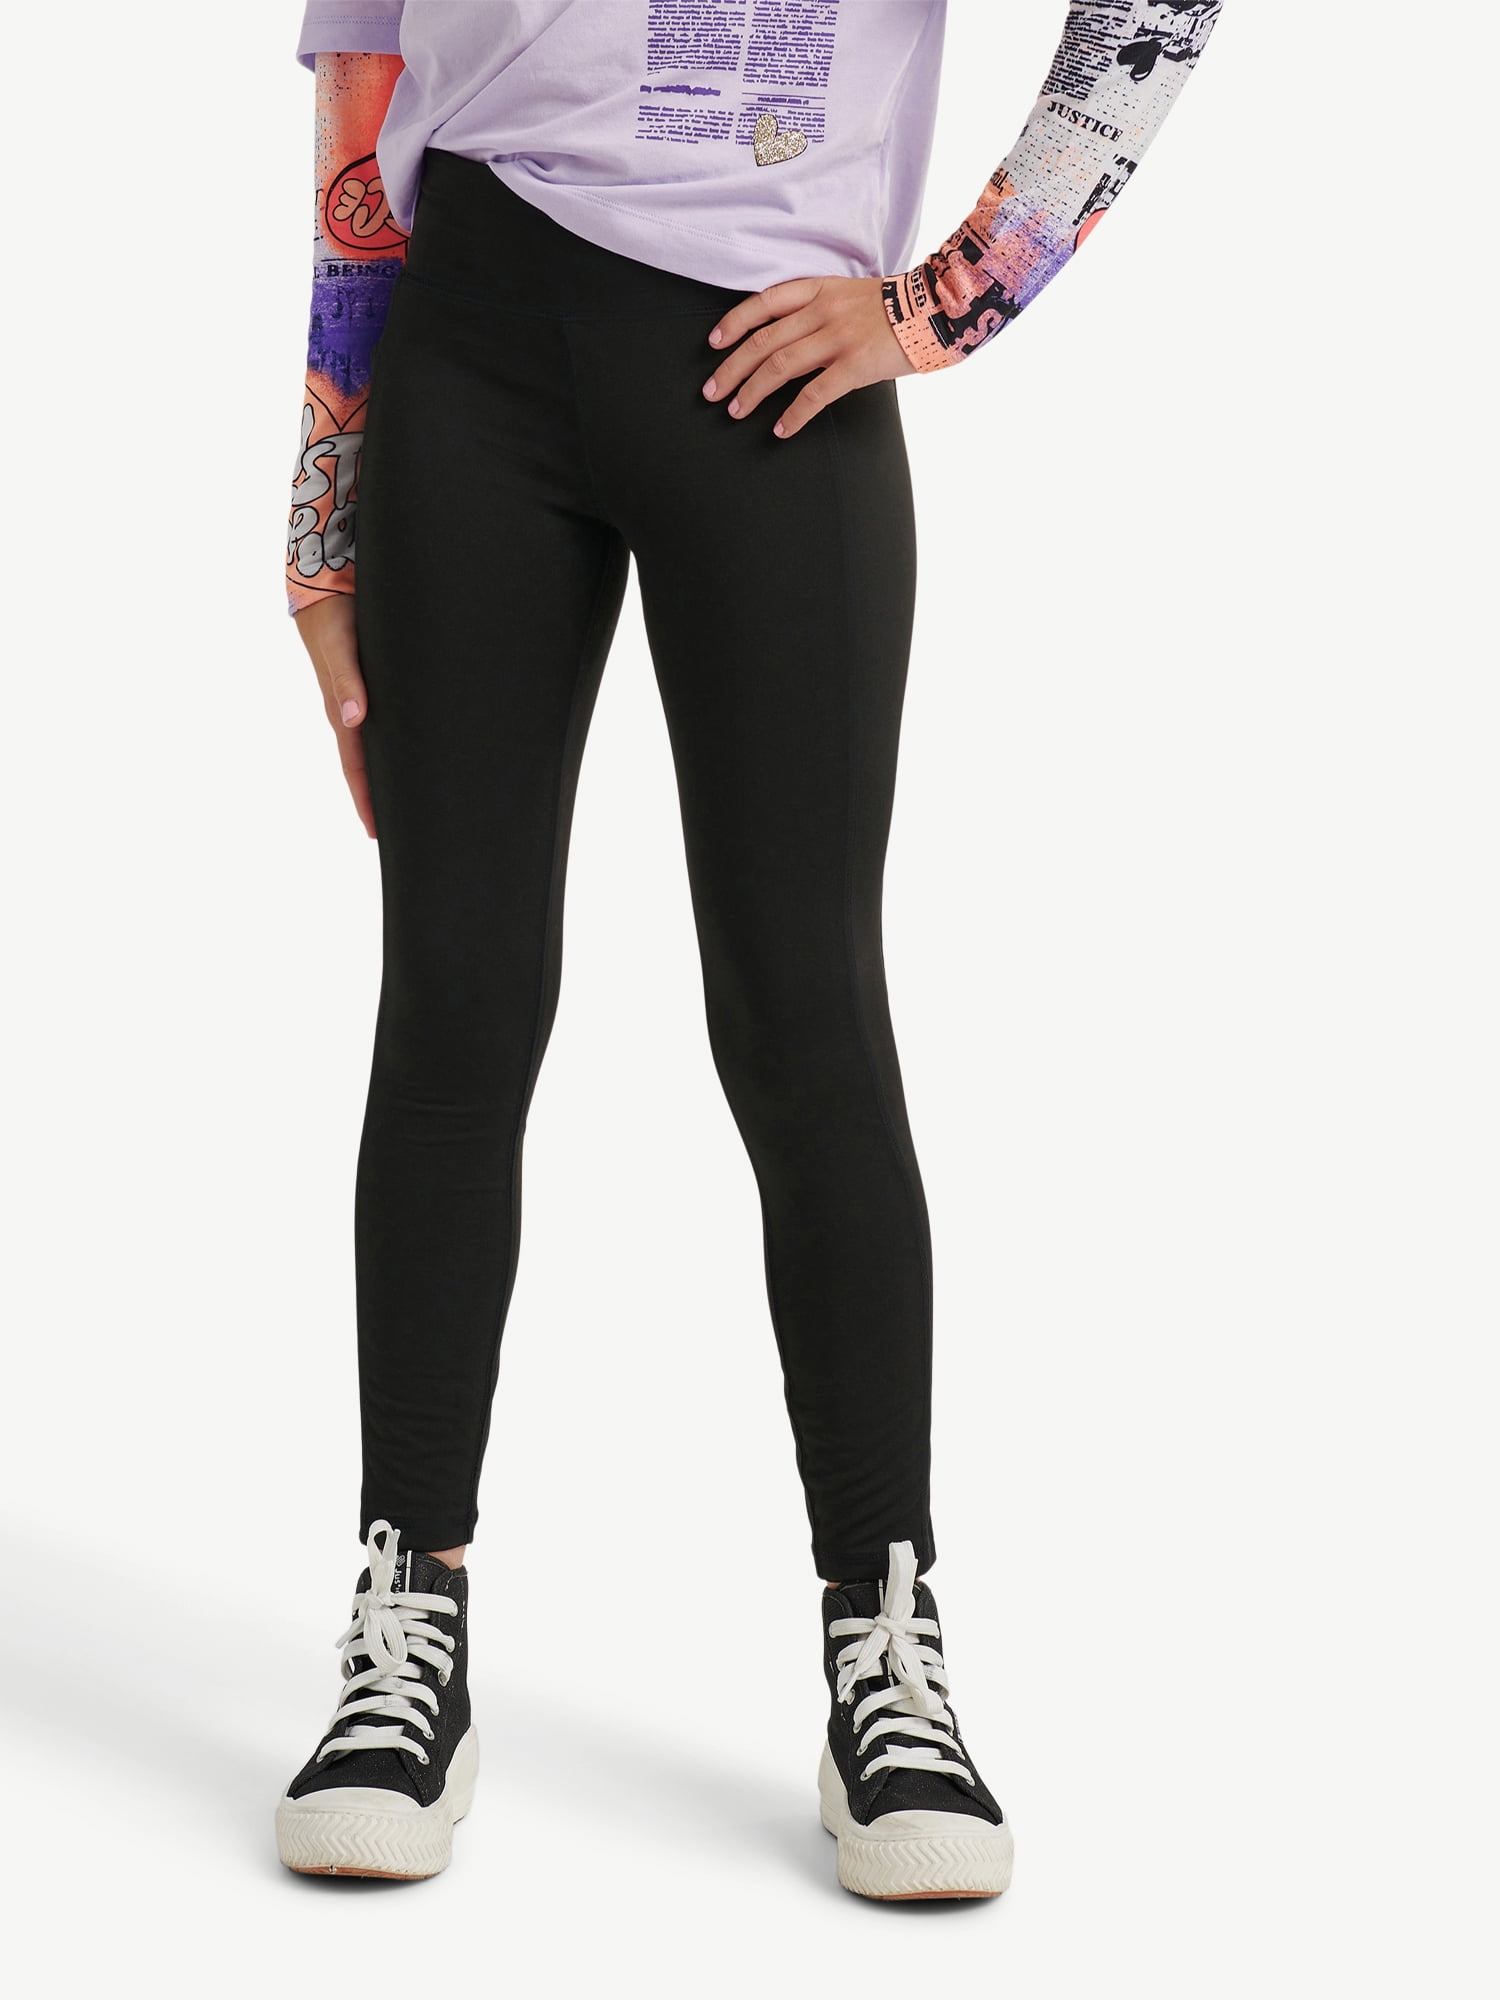 Justice Girl's J Sport X Black Stripe Active Leggings Size S (7/8